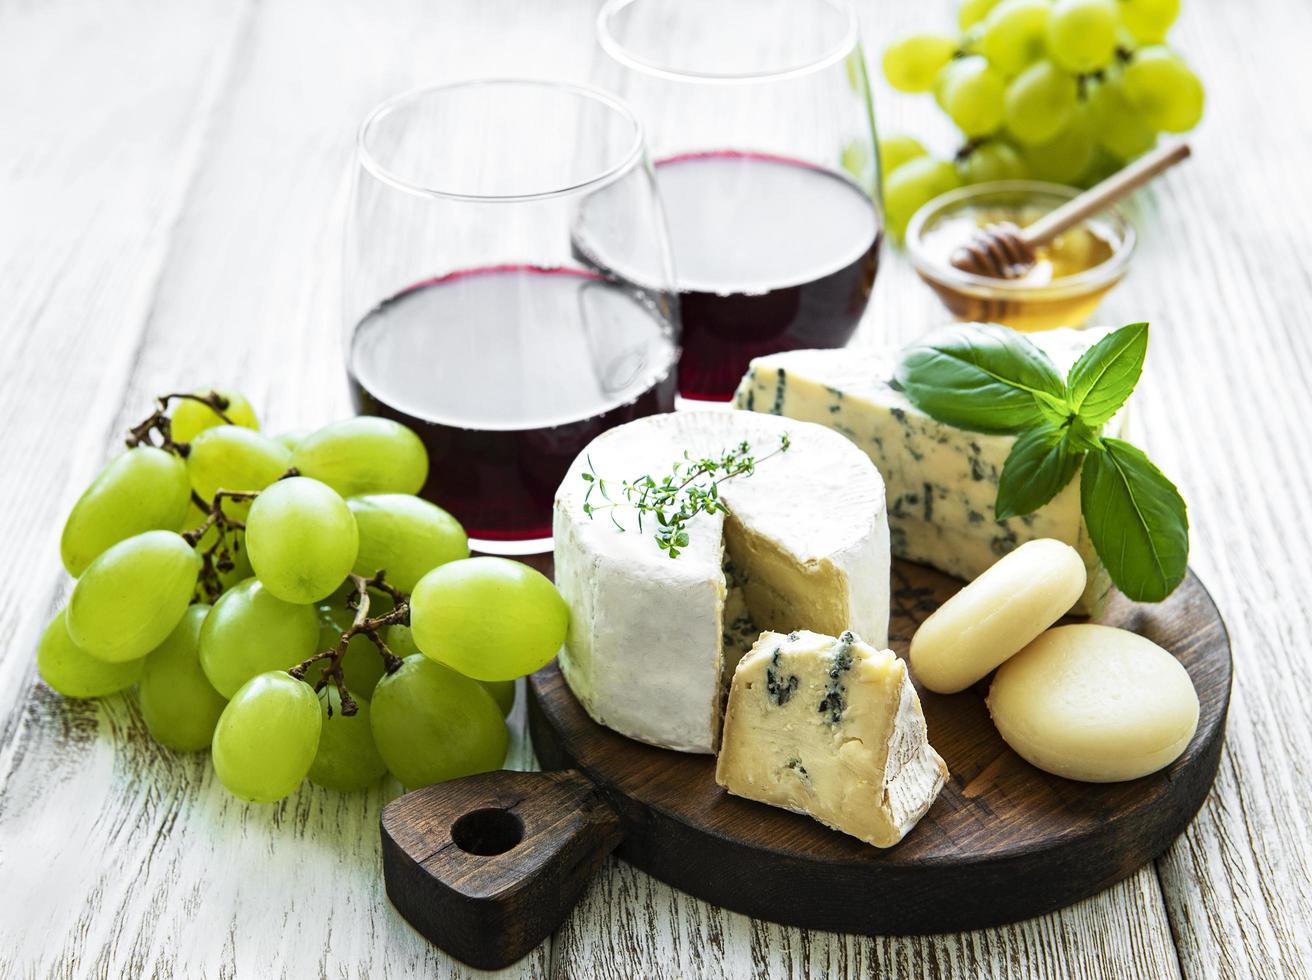 vários tipos de queijos, uvas e vinhos foto